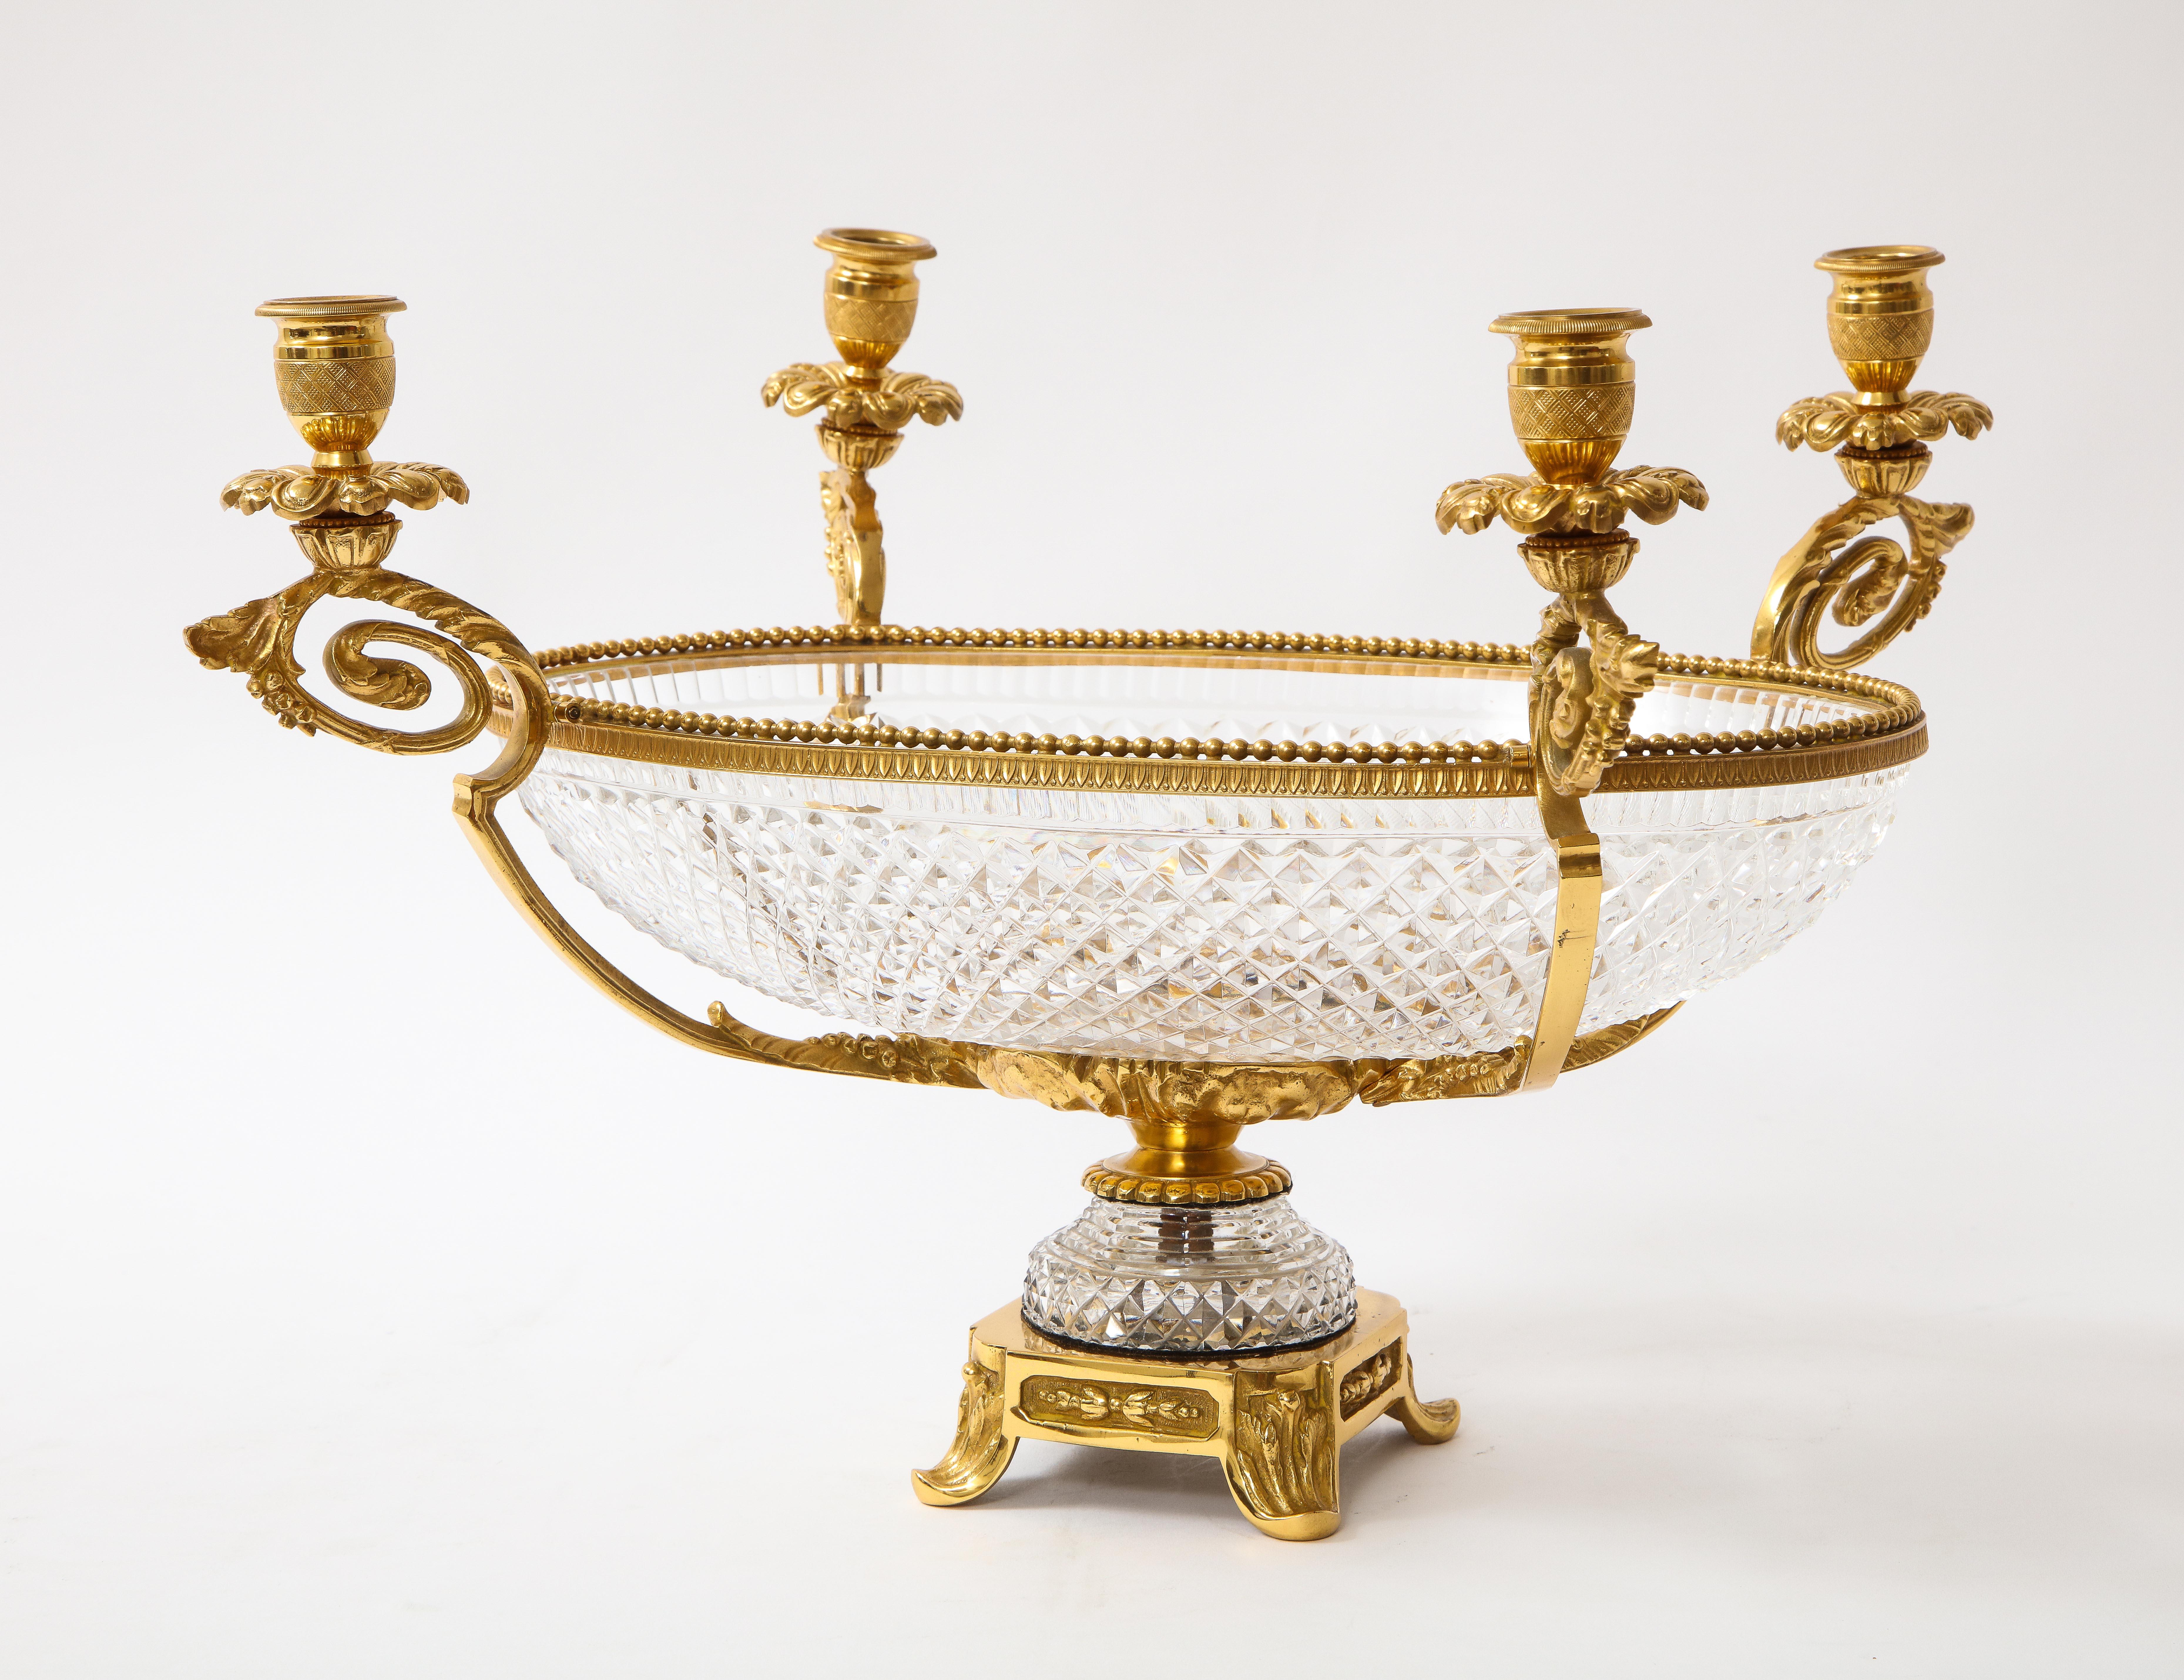 Eine ungewöhnliche 19. Jahrhundert Französisch Baccarat Prismic Muster Kristall Mittelstück und vier-Licht dore Bronze Kandelaber gesetzt. Die Schale in der Mitte ist aus französischem Baccarat-Kristall, dem feinsten Kristallhersteller der Welt. Die